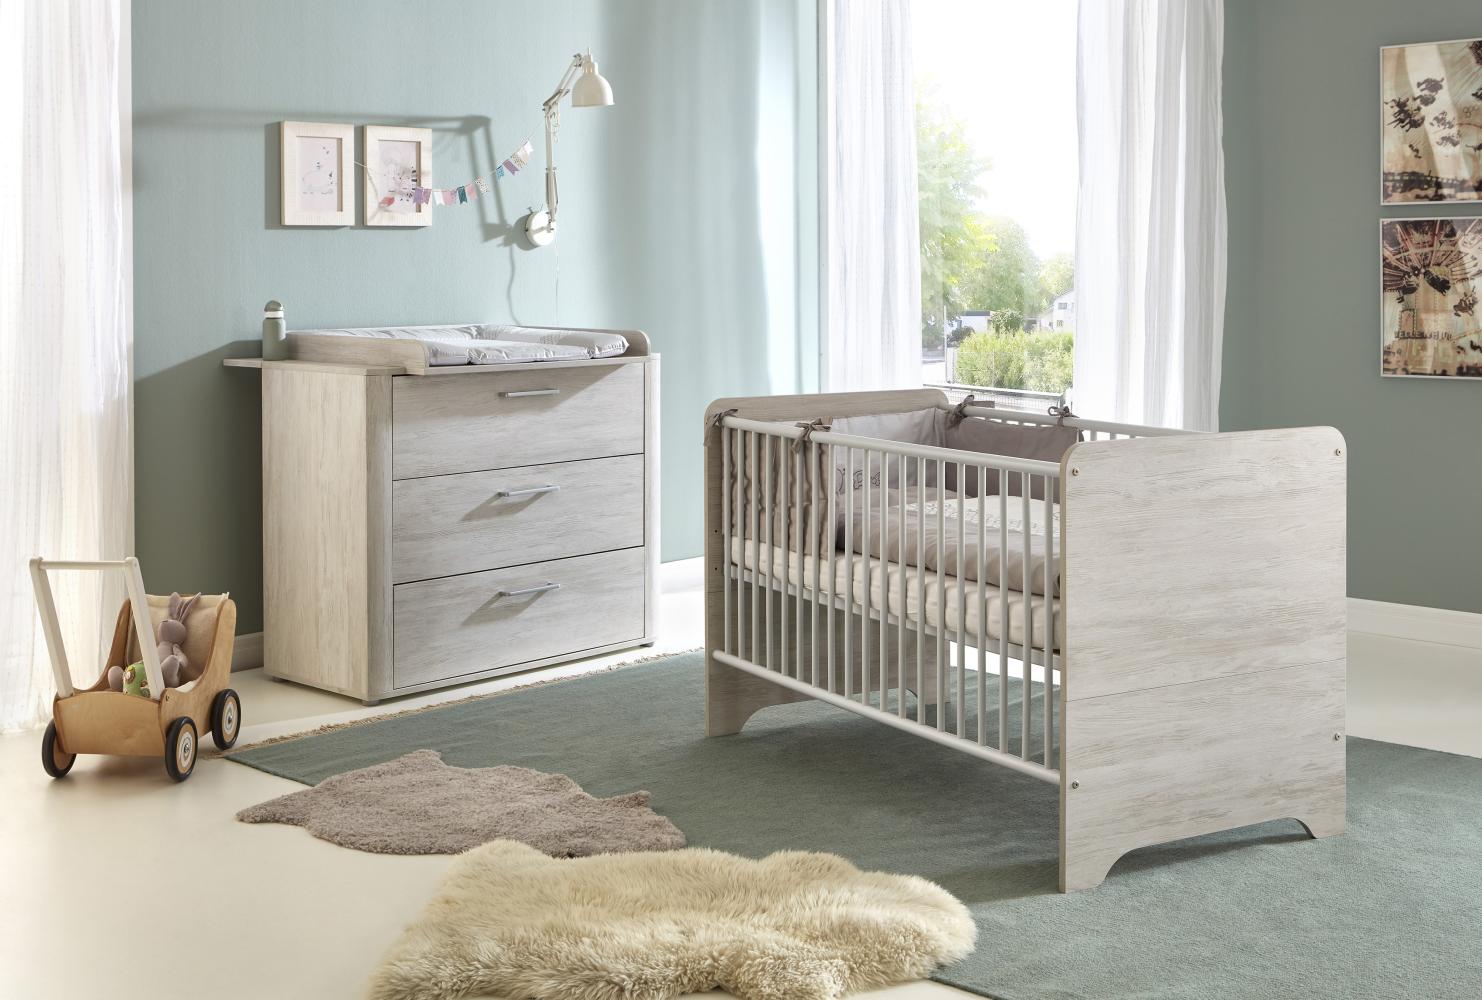 Arthur Berndt 'Leon' Babyzimmer Sparset 2-teilig, Kinderbett (70 x 140 cm) und Wickelkommode mit Wickelaufsatz Light Wood Bild 1